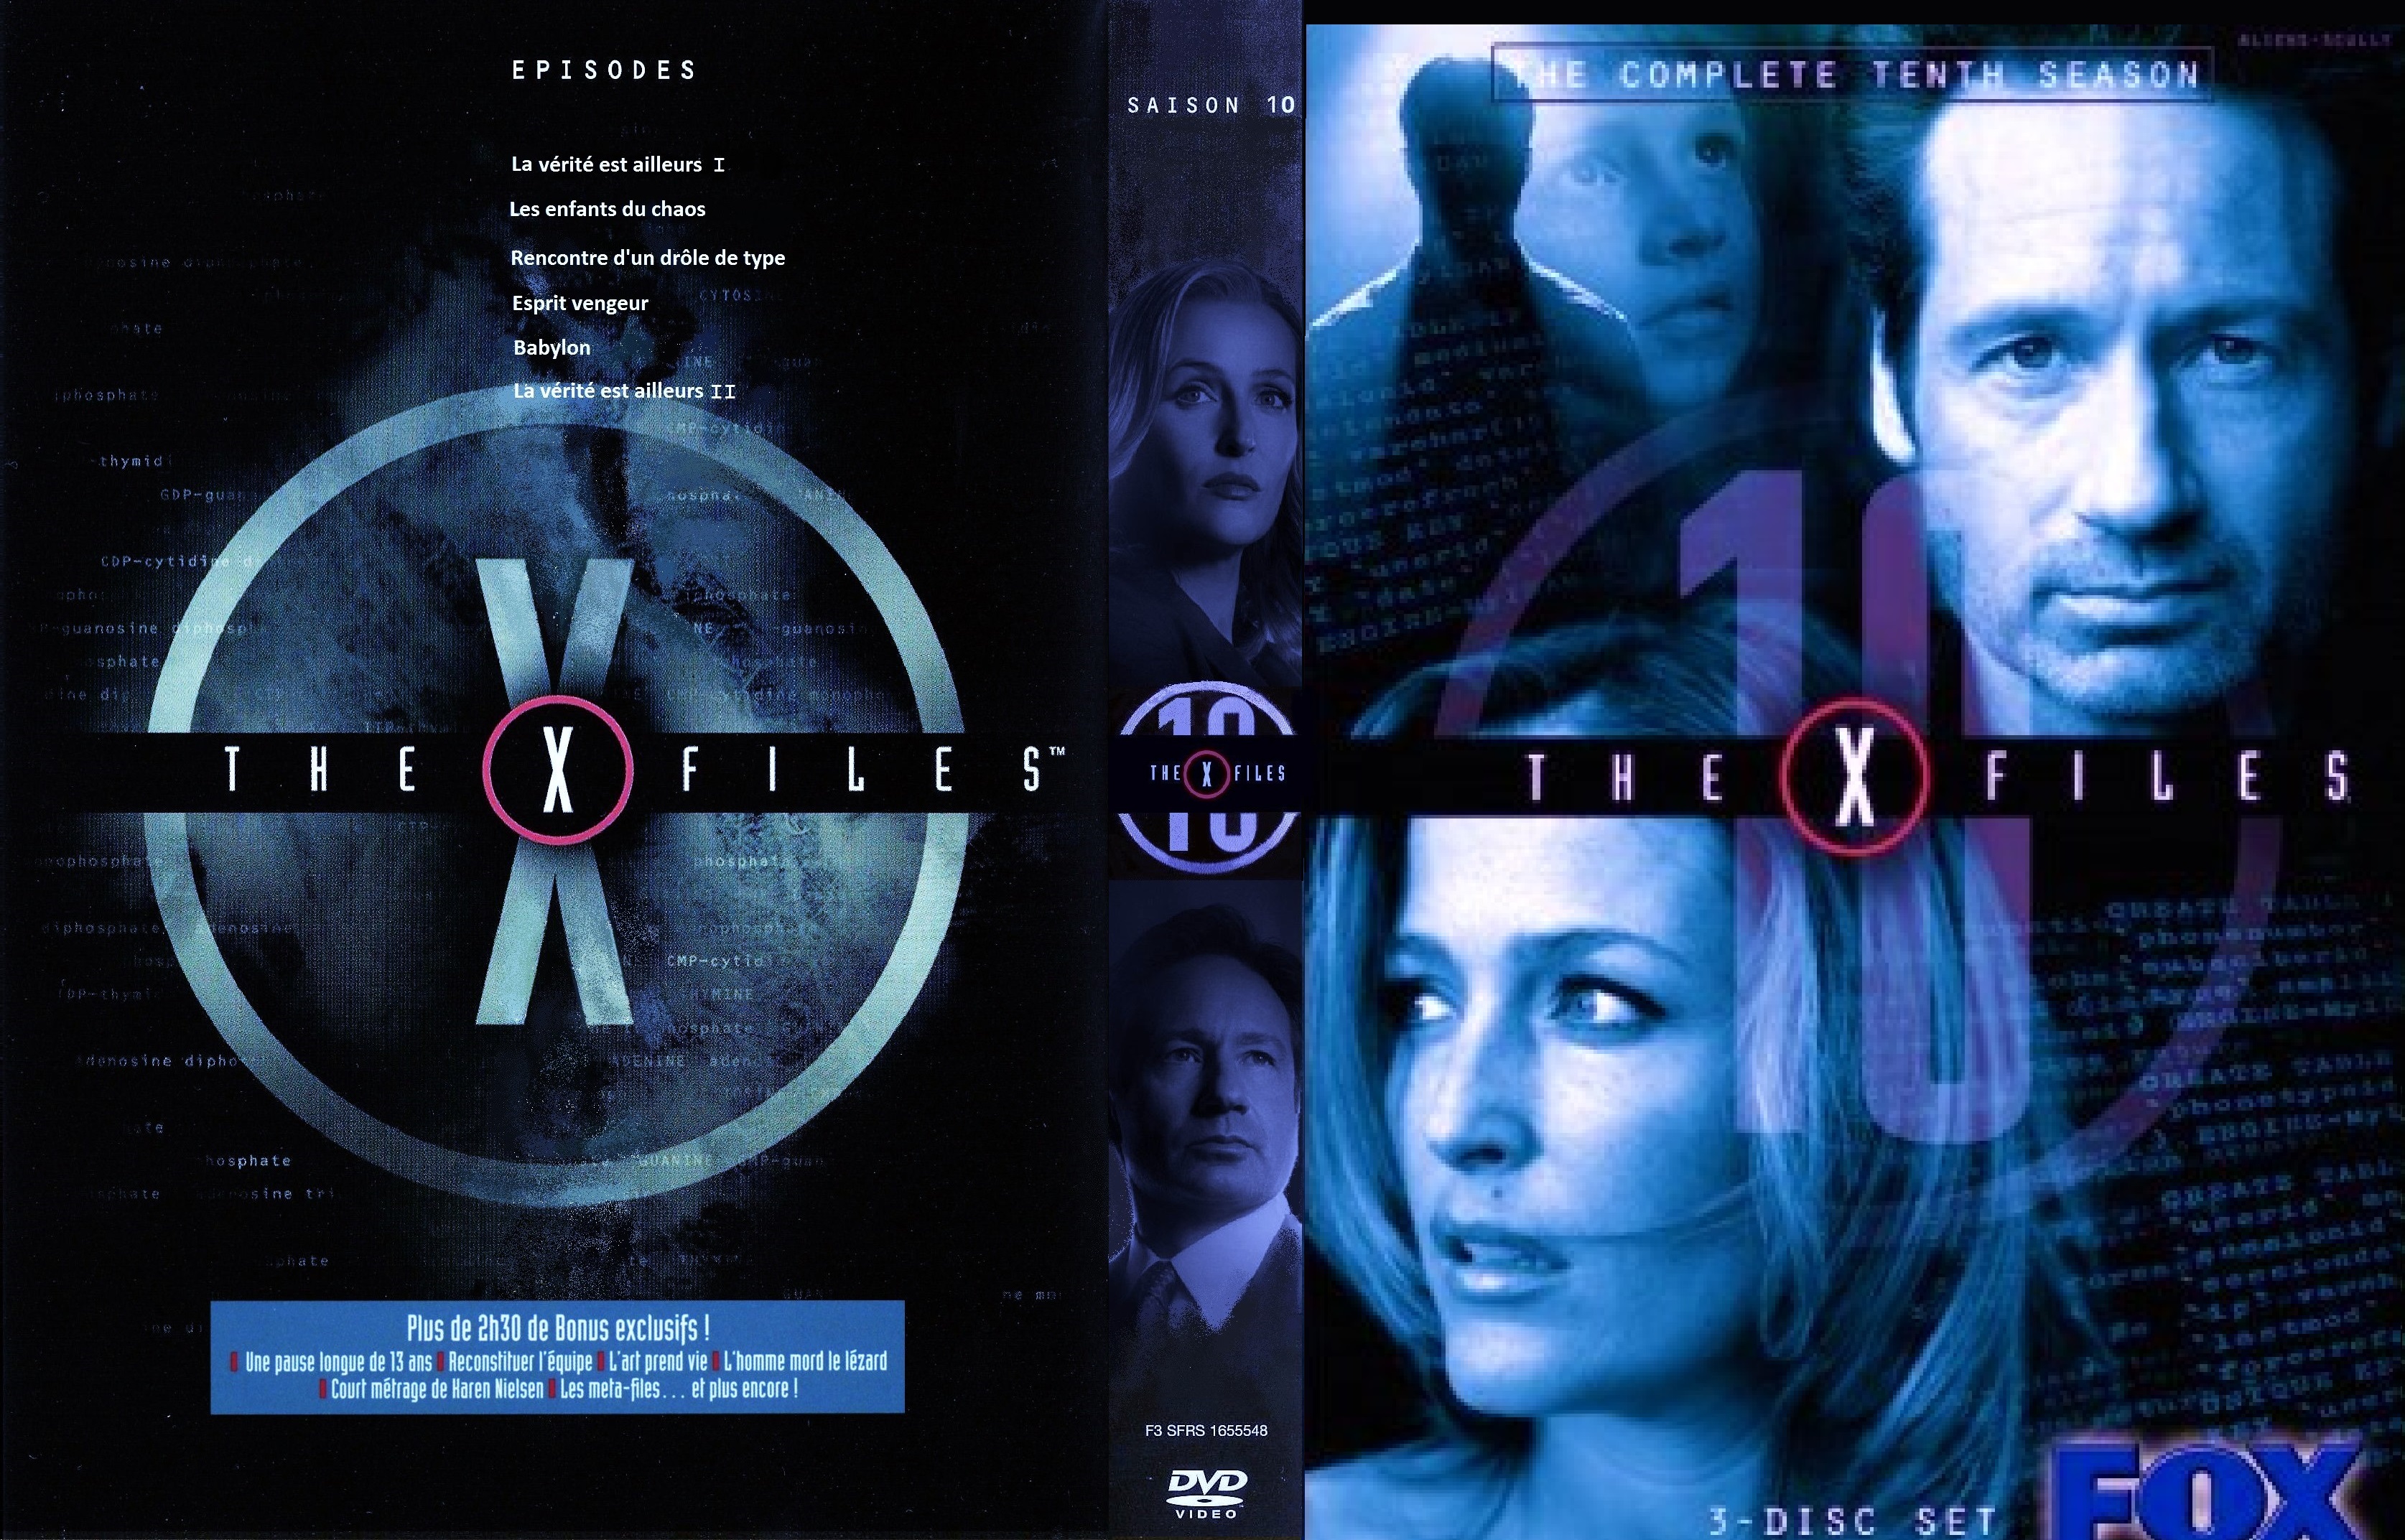 Jaquette DVD X Files Saison 10 custom v3